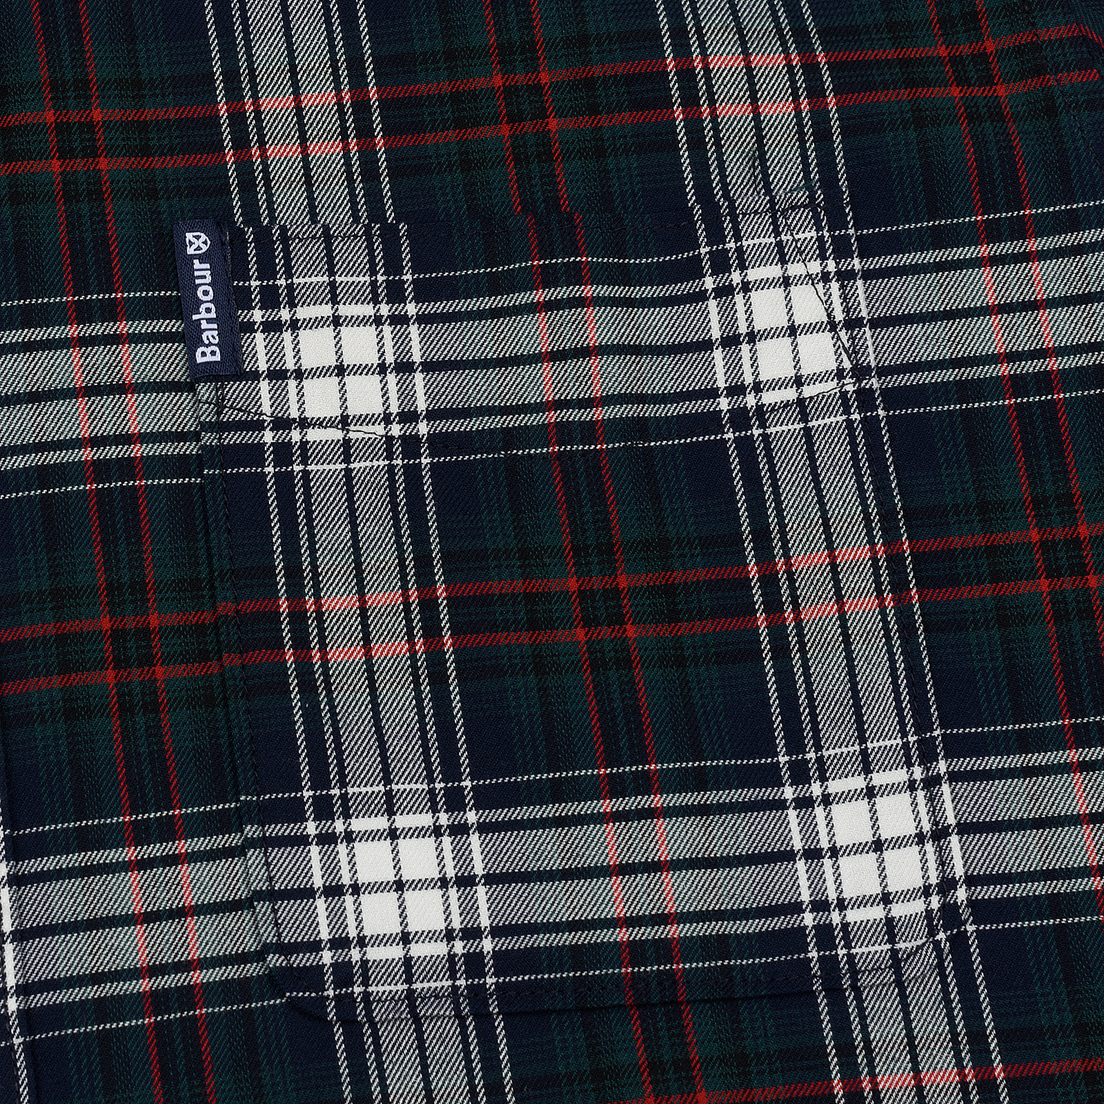 Barbour Мужская рубашка Highland Check 21